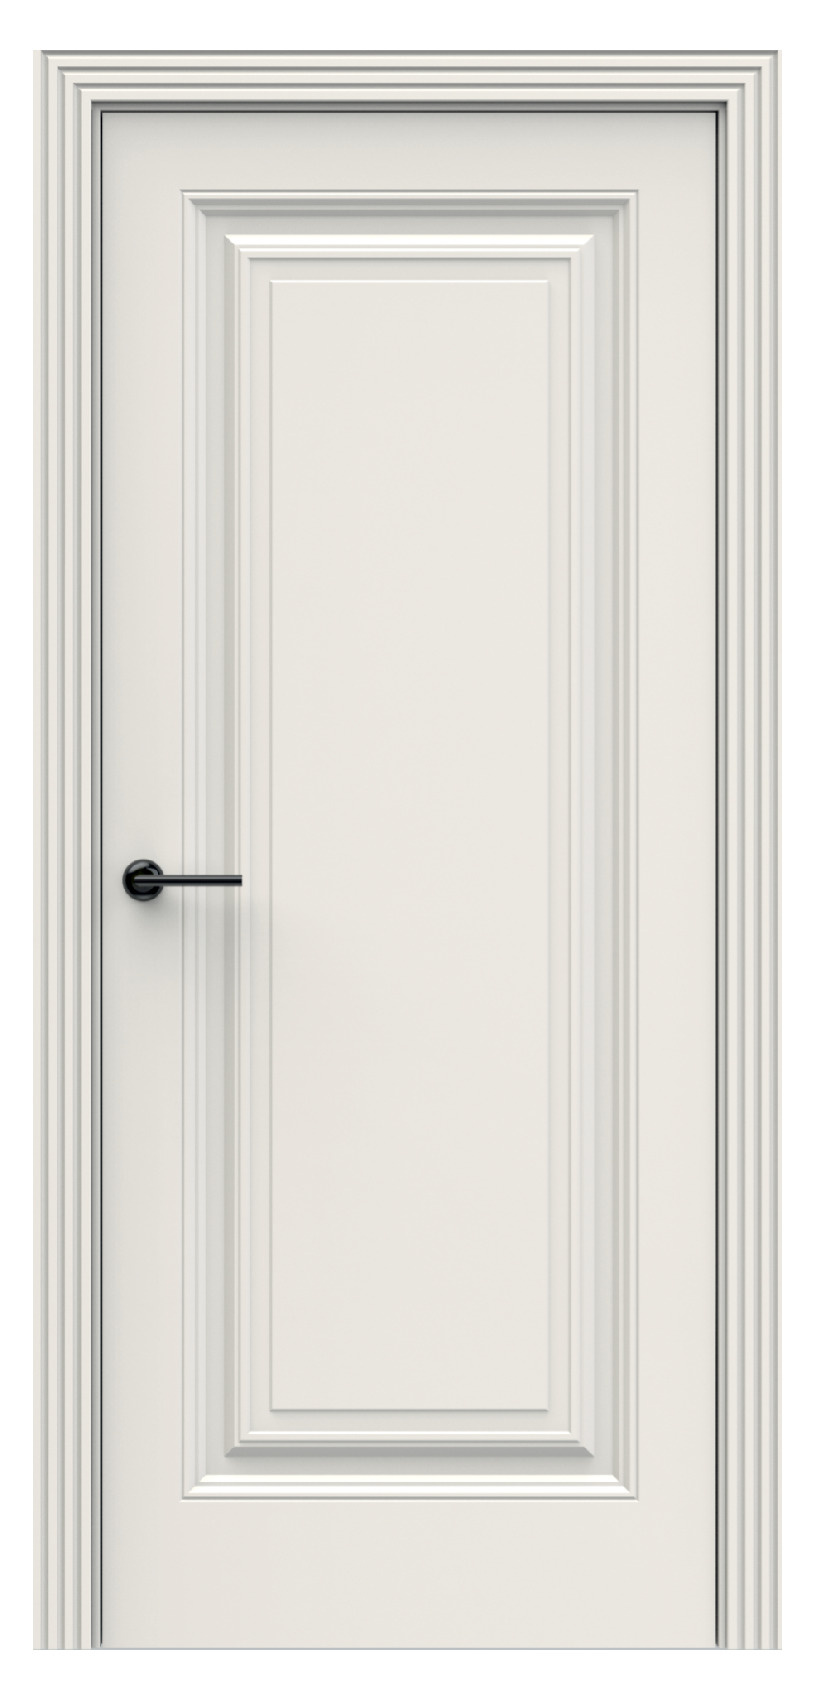 Questdoors Межкомнатная дверь QBR9, арт. 17922 - фото №1